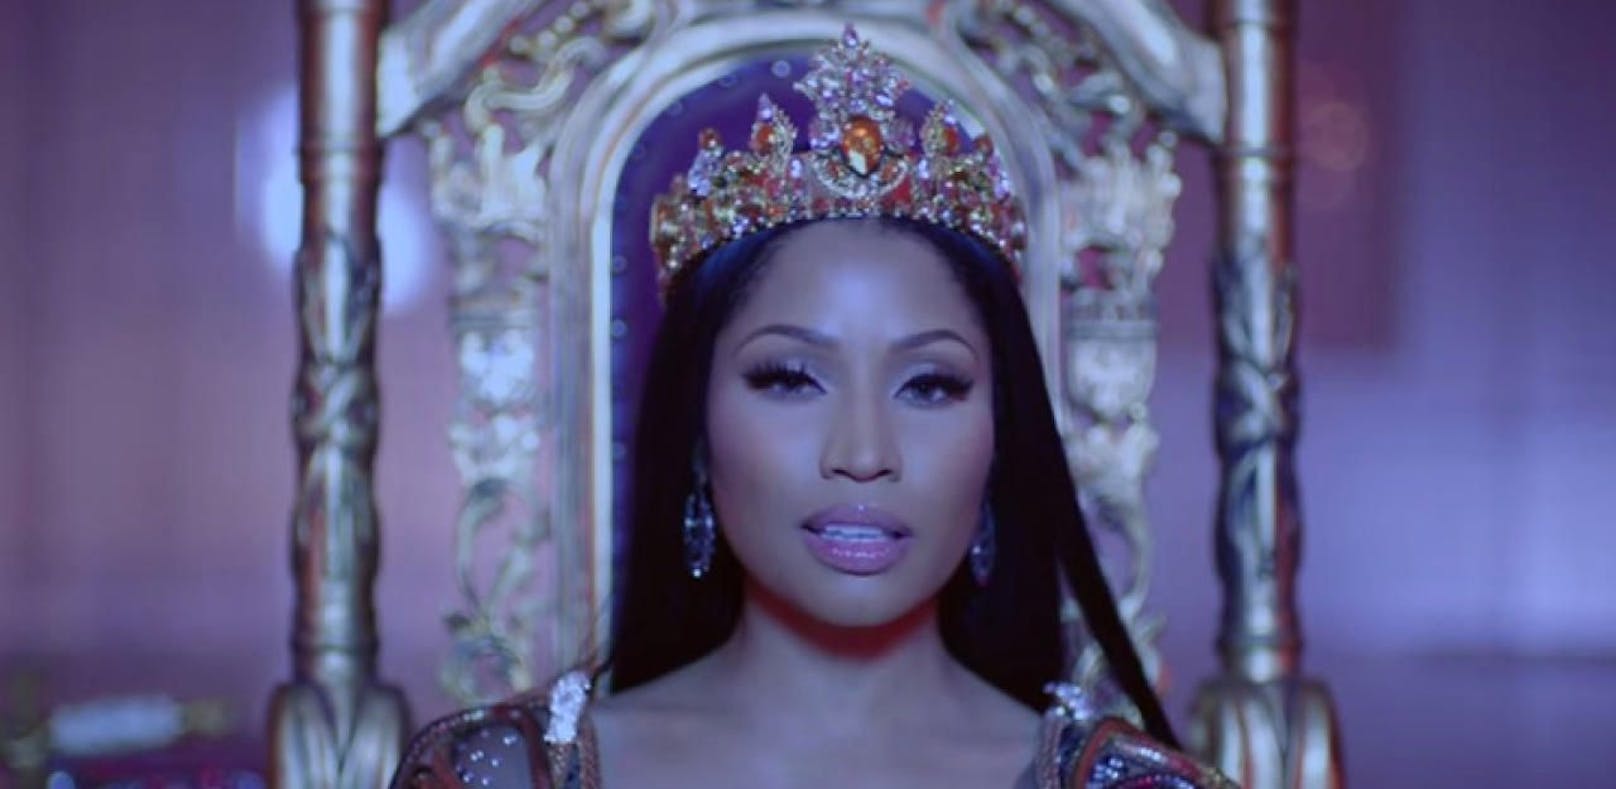 Nicki Minaj veröffentlicht Musikvideo zu "No Frauds"